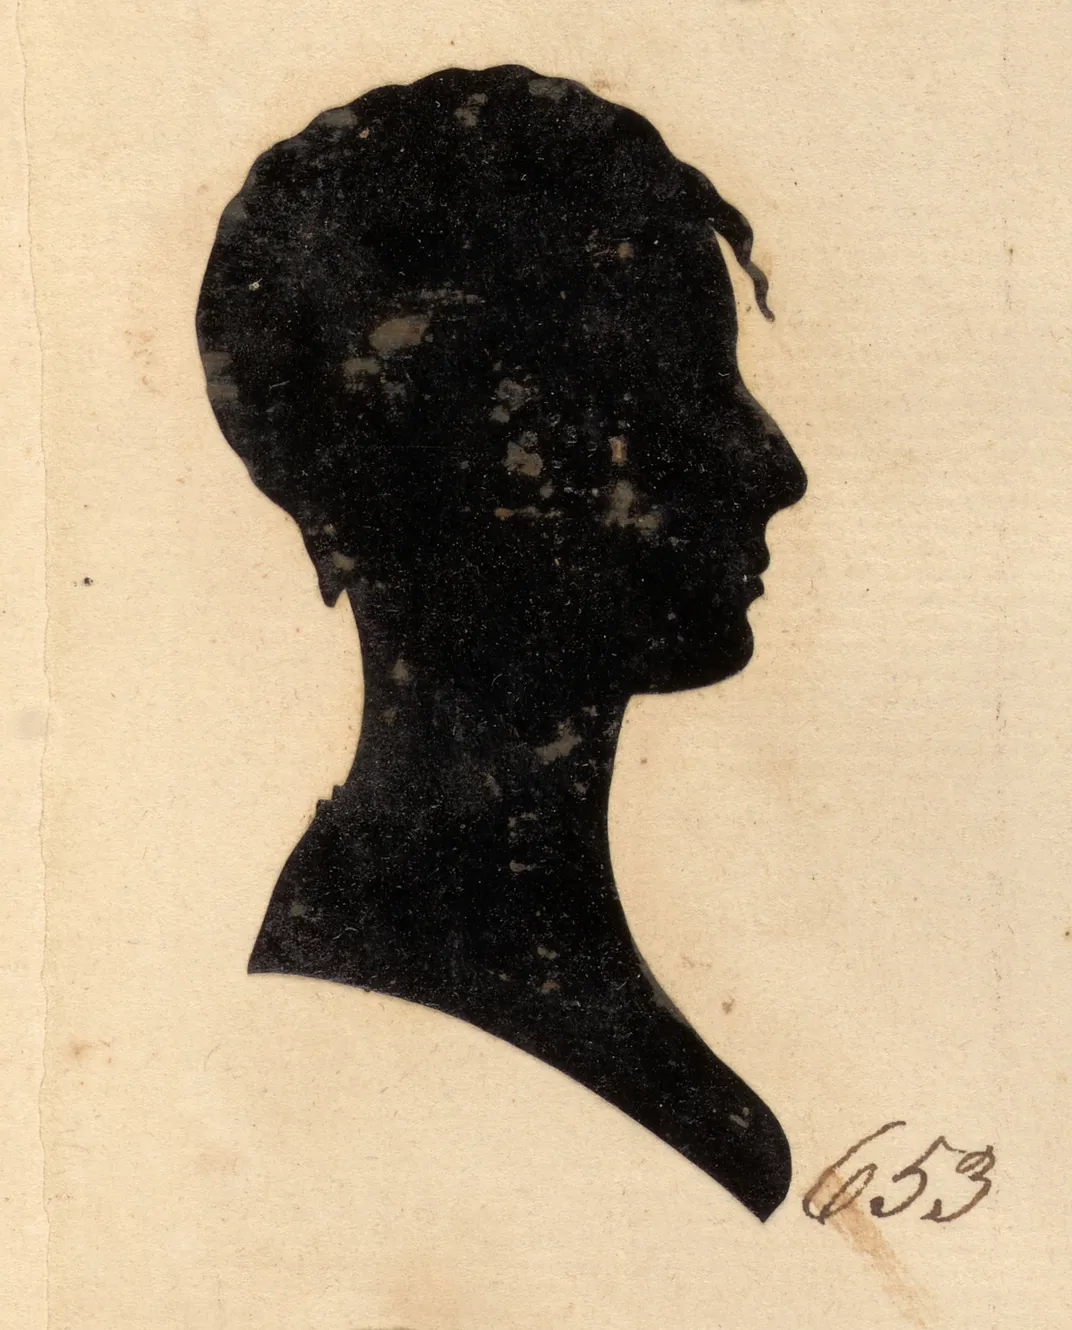 Victoria Allard, William Bache, ca. 1803-04